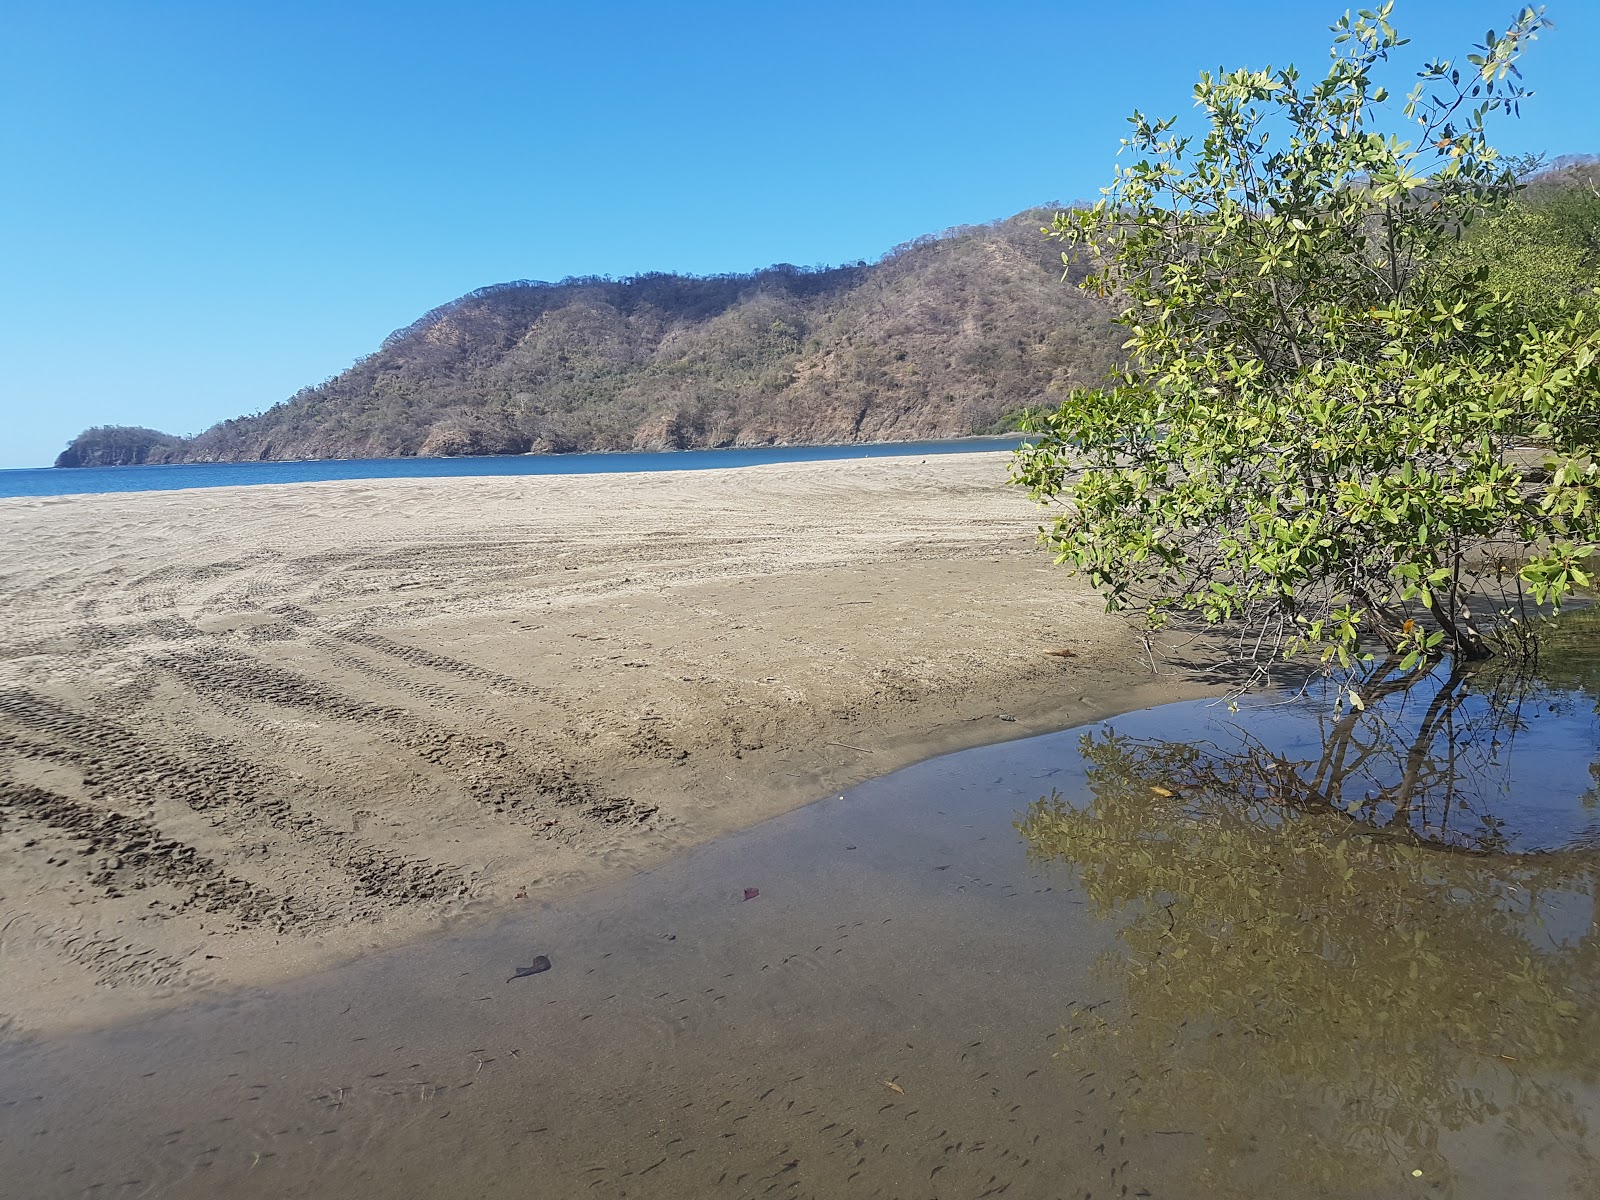 Zdjęcie Playa Grande - popularne miejsce wśród znawców relaksu